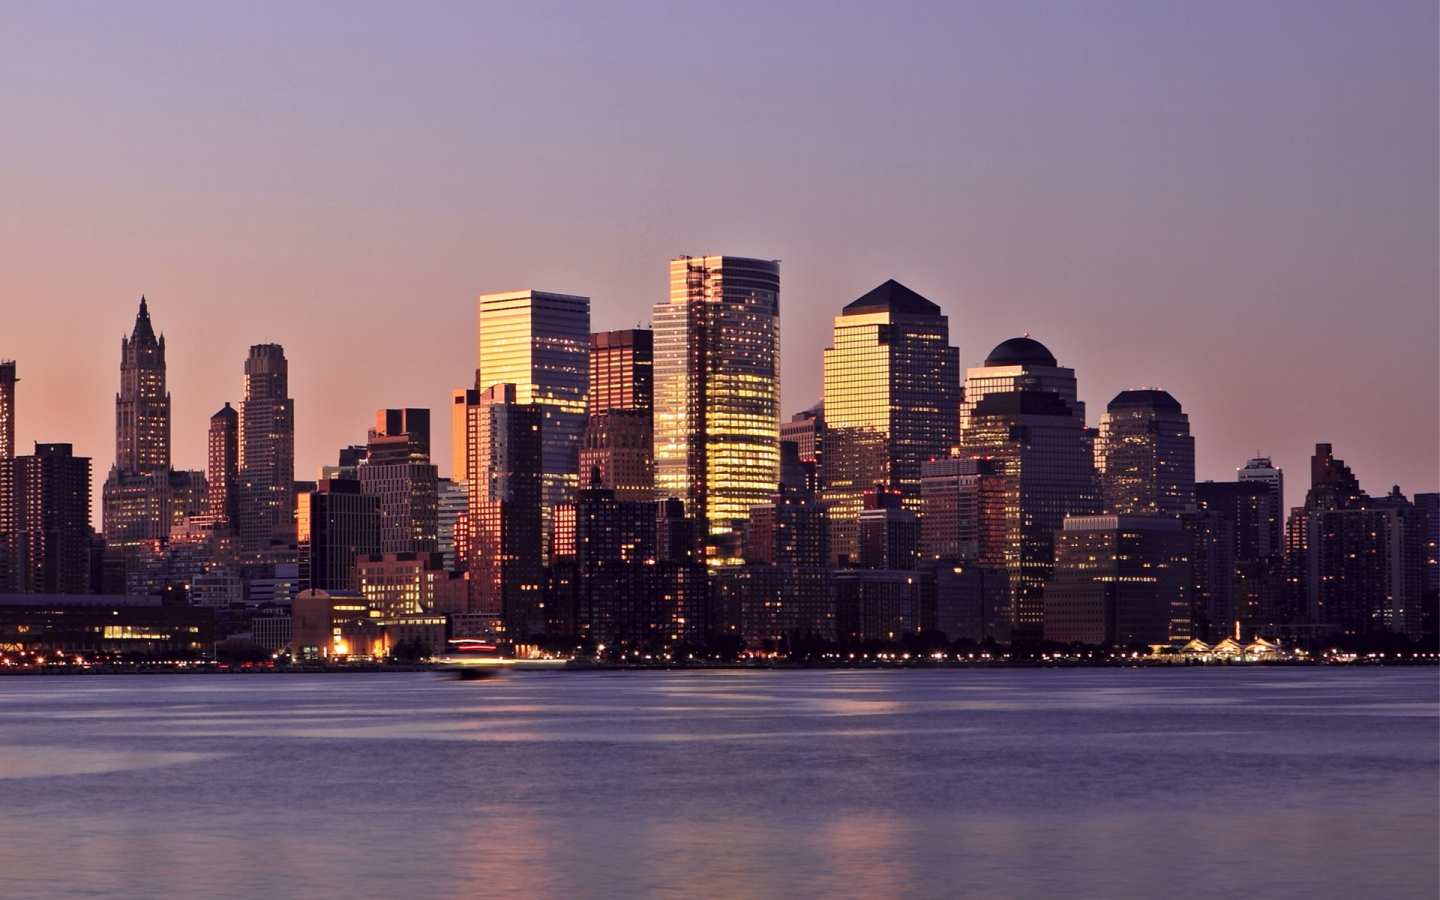 New York Manhattan Lights for 1440 x 900 widescreen resolution